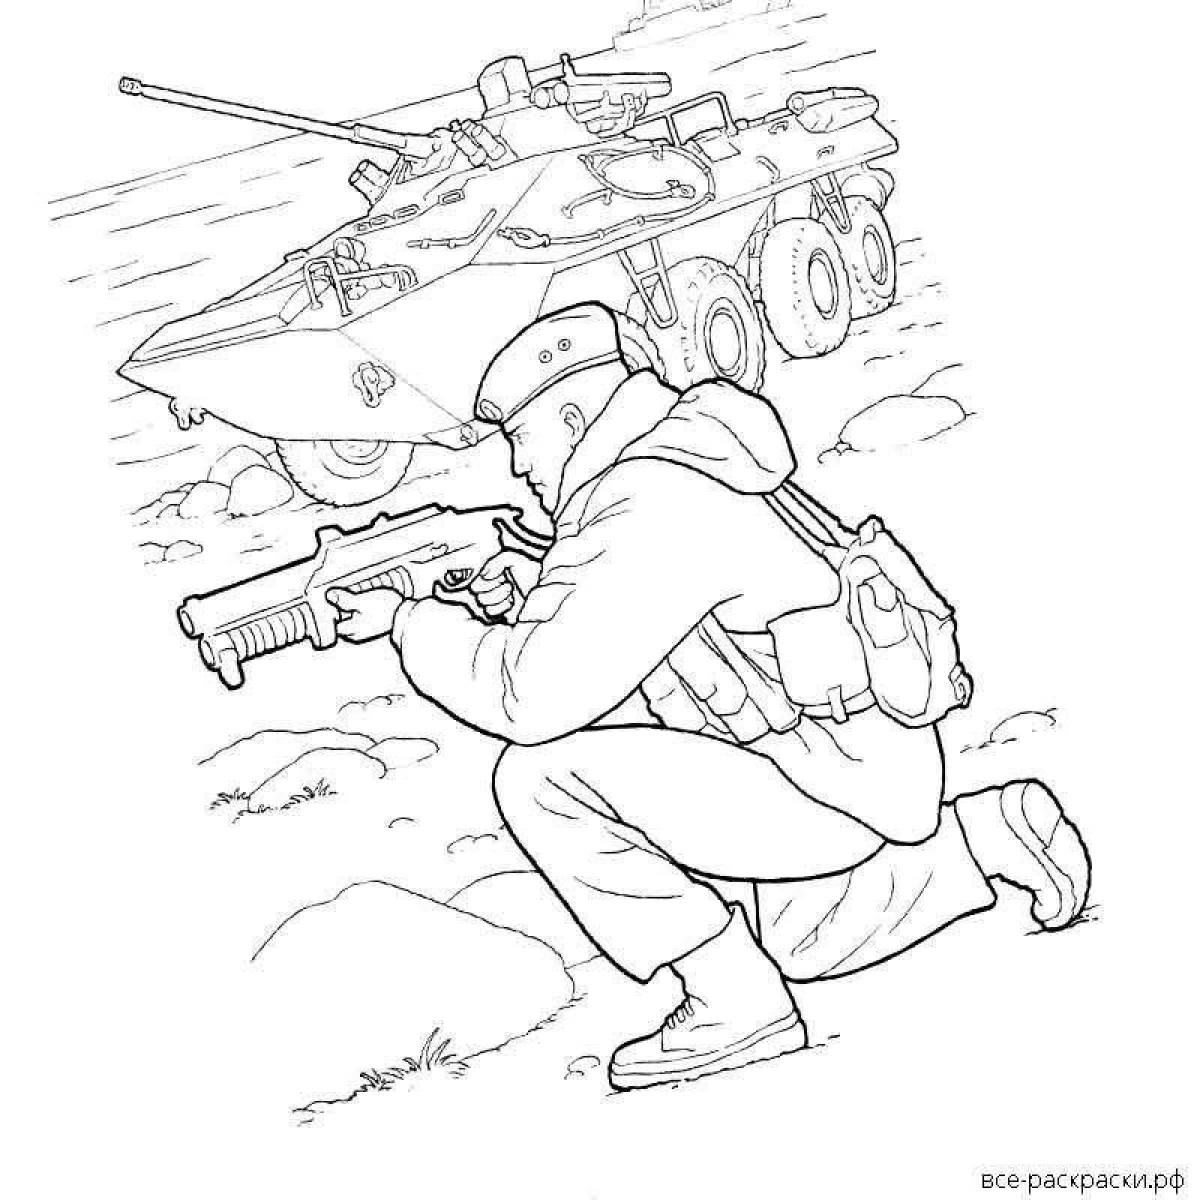 Смелая раскраска рисунок солдата от школьника